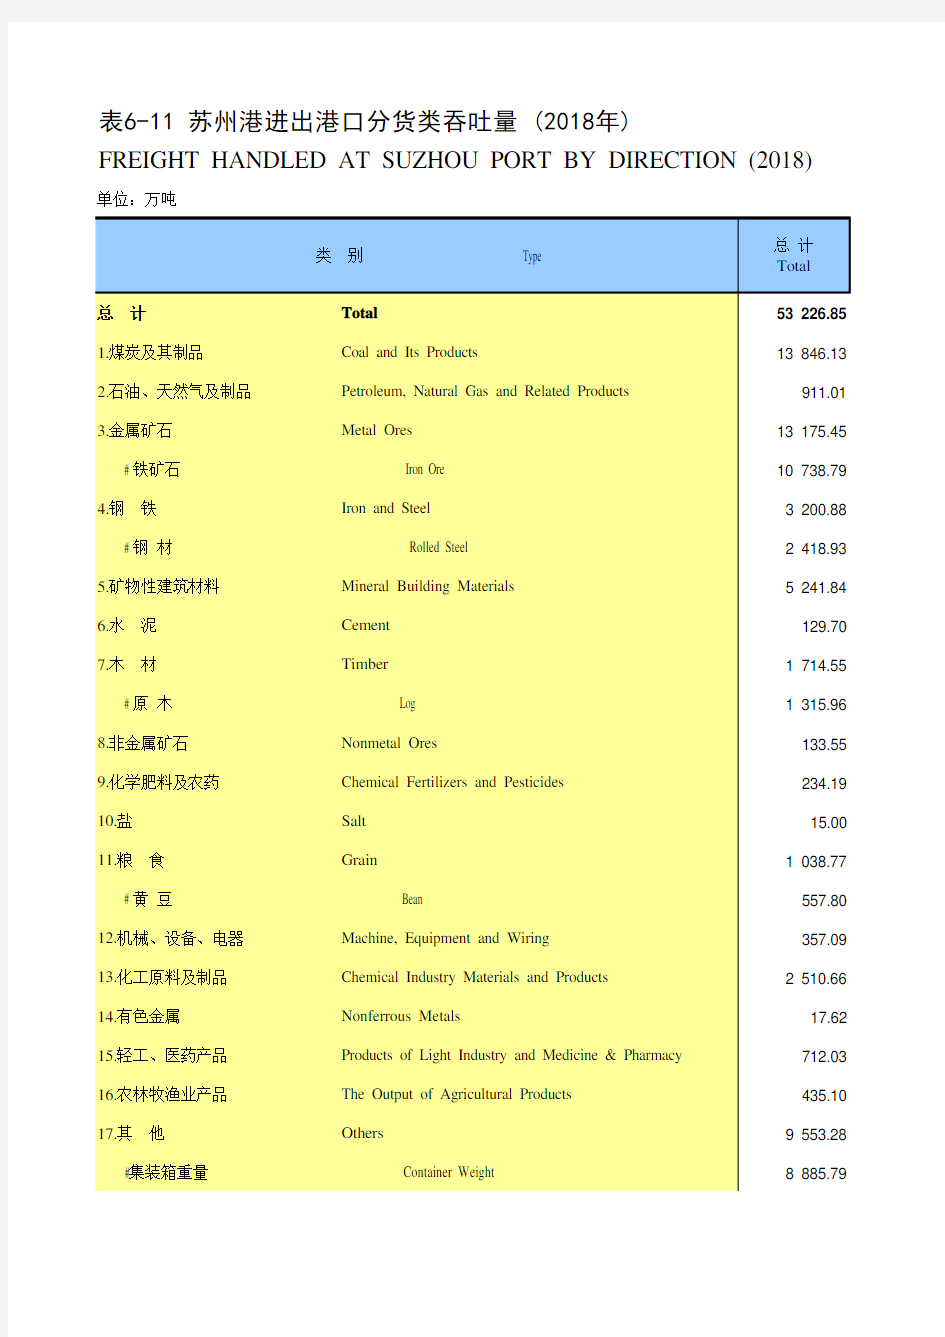 江苏省苏州市统计年鉴社会经济发展指标数据：6-11 苏州港进出港口分货类吞吐量(2018年)